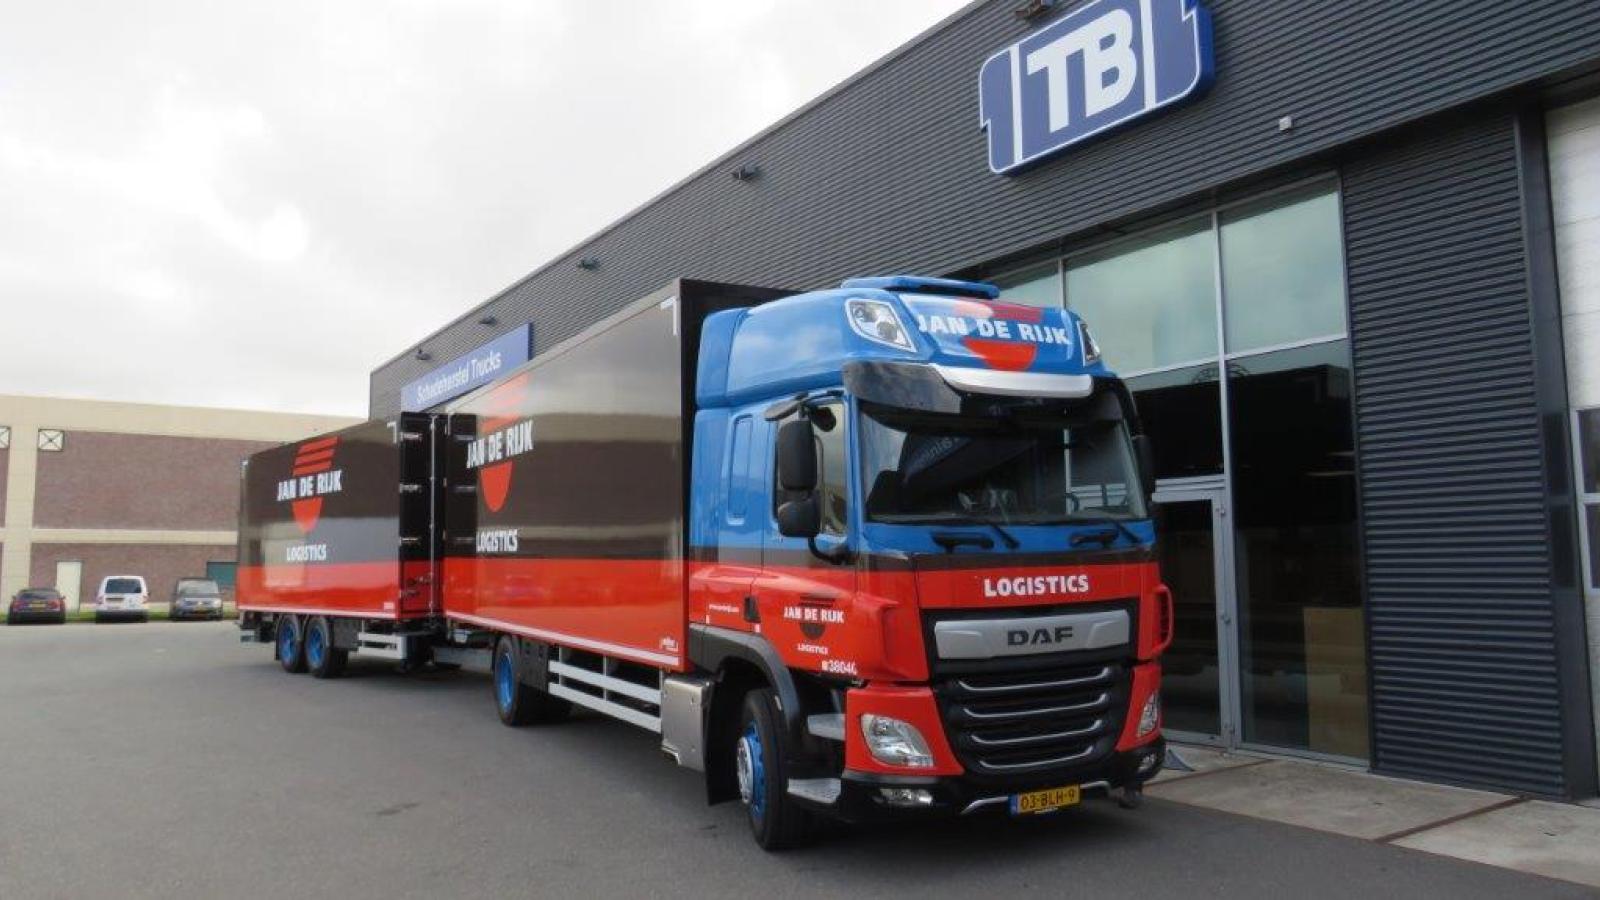 Jan de Rijk Logistics trailer